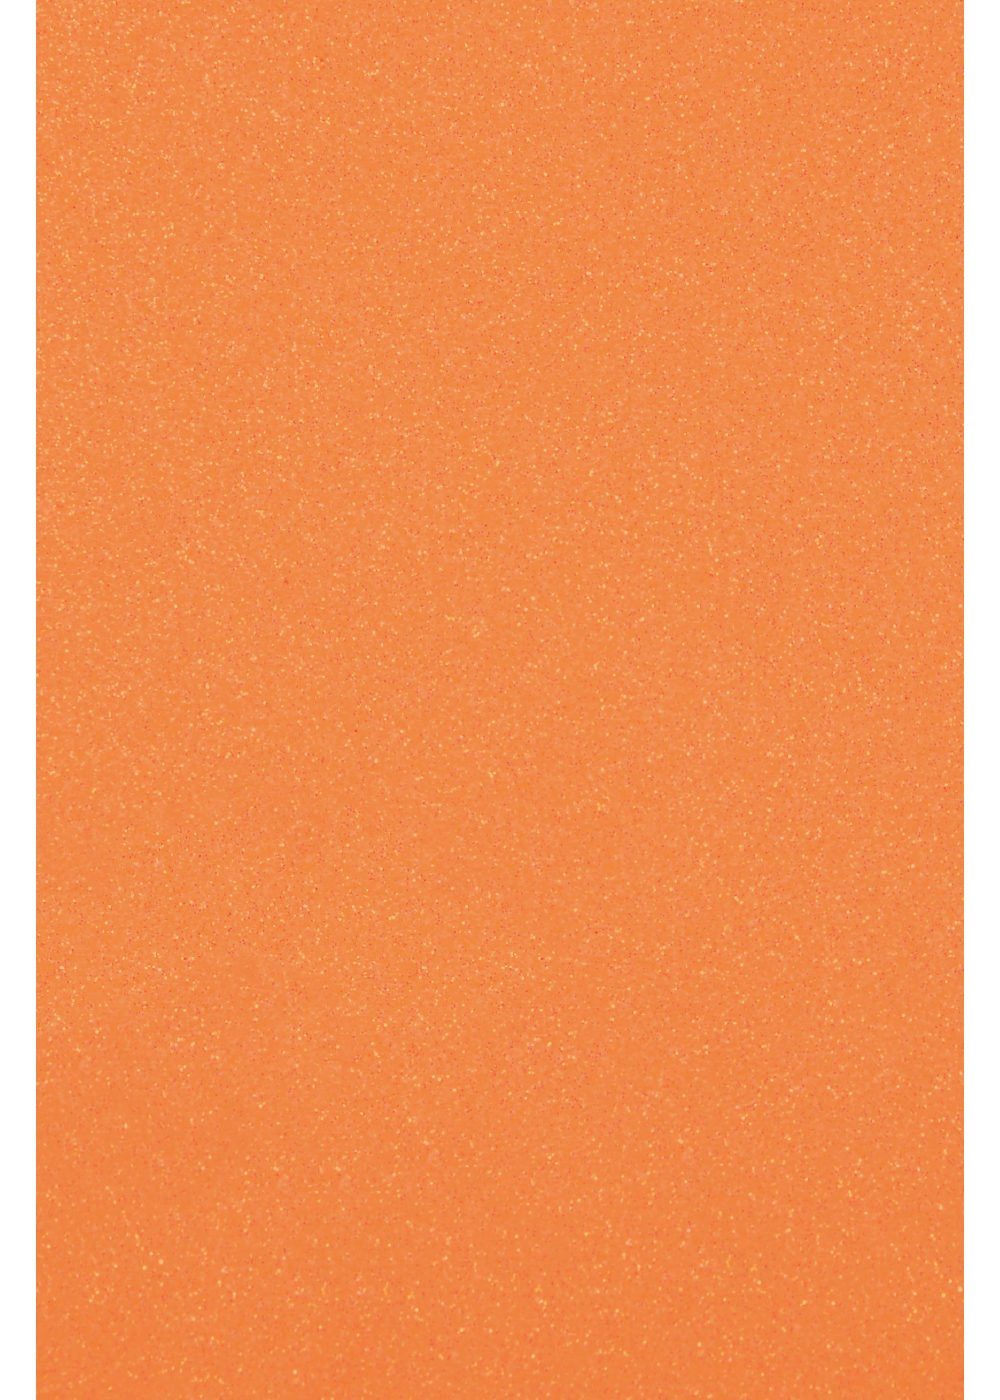 Hilltop Transparentpapier Glitzer Transferfolie/Textilfolie zum Aufbügeln, perfekt zum Plottern Neon Orange